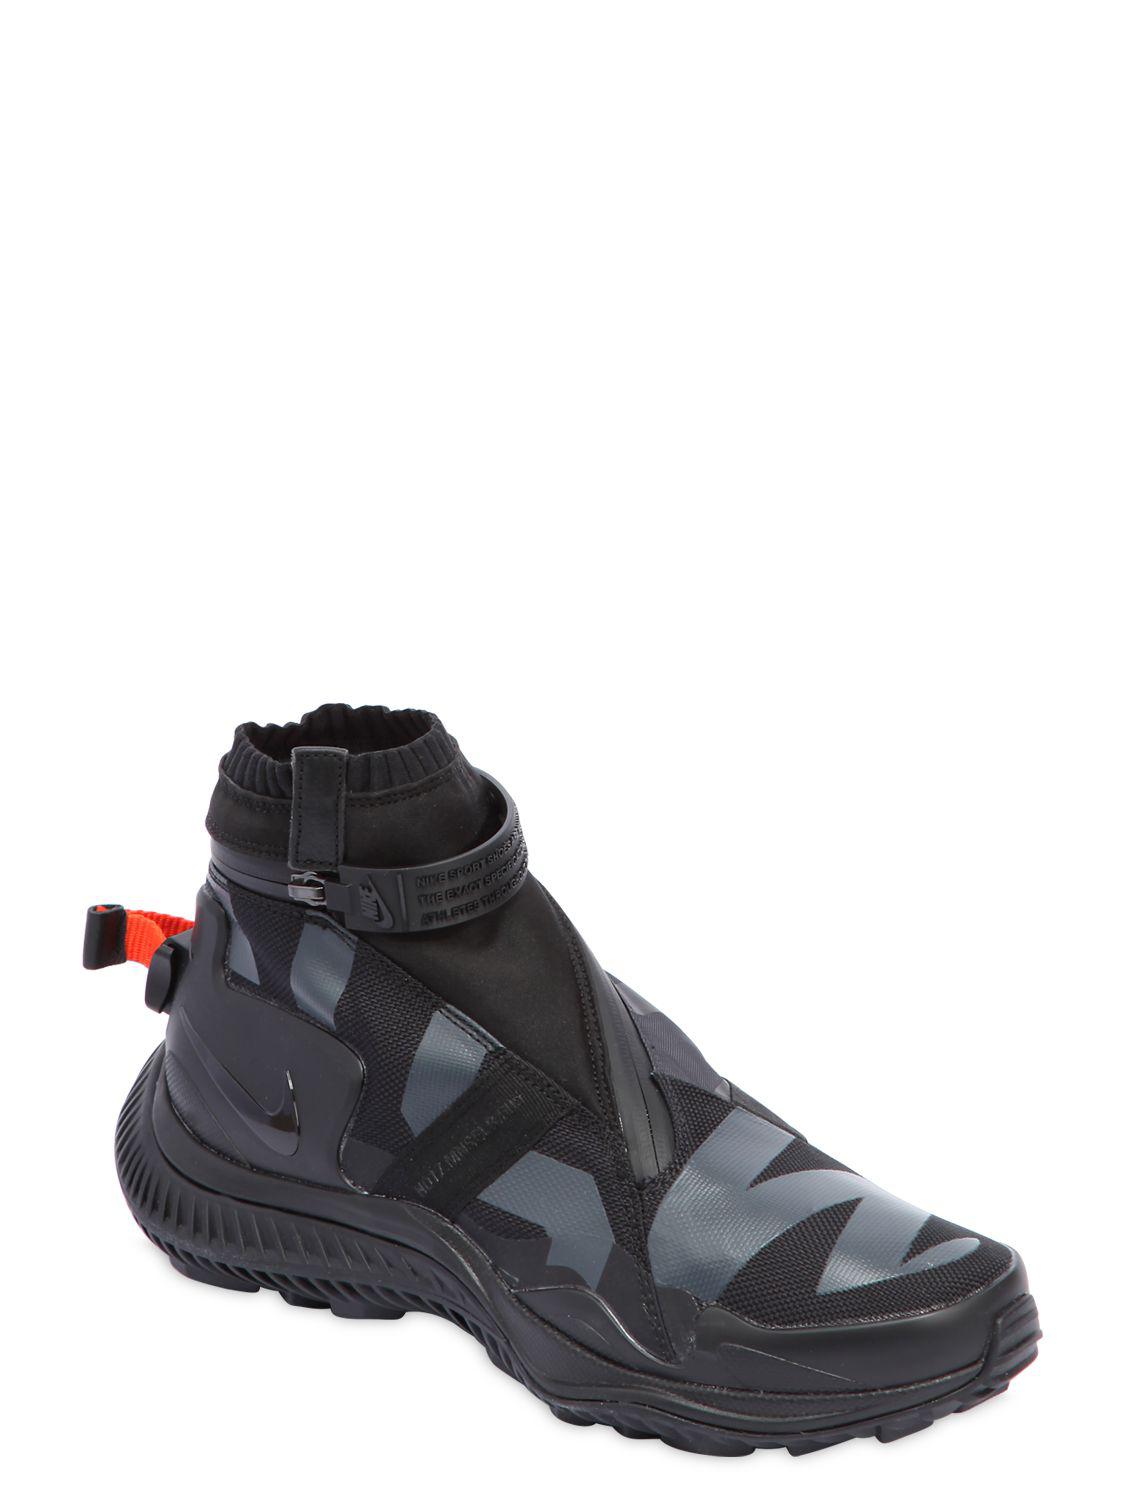 Lyst - Nike Acg.008.zpbt Waterproof Sneaker Boots in Black for Men